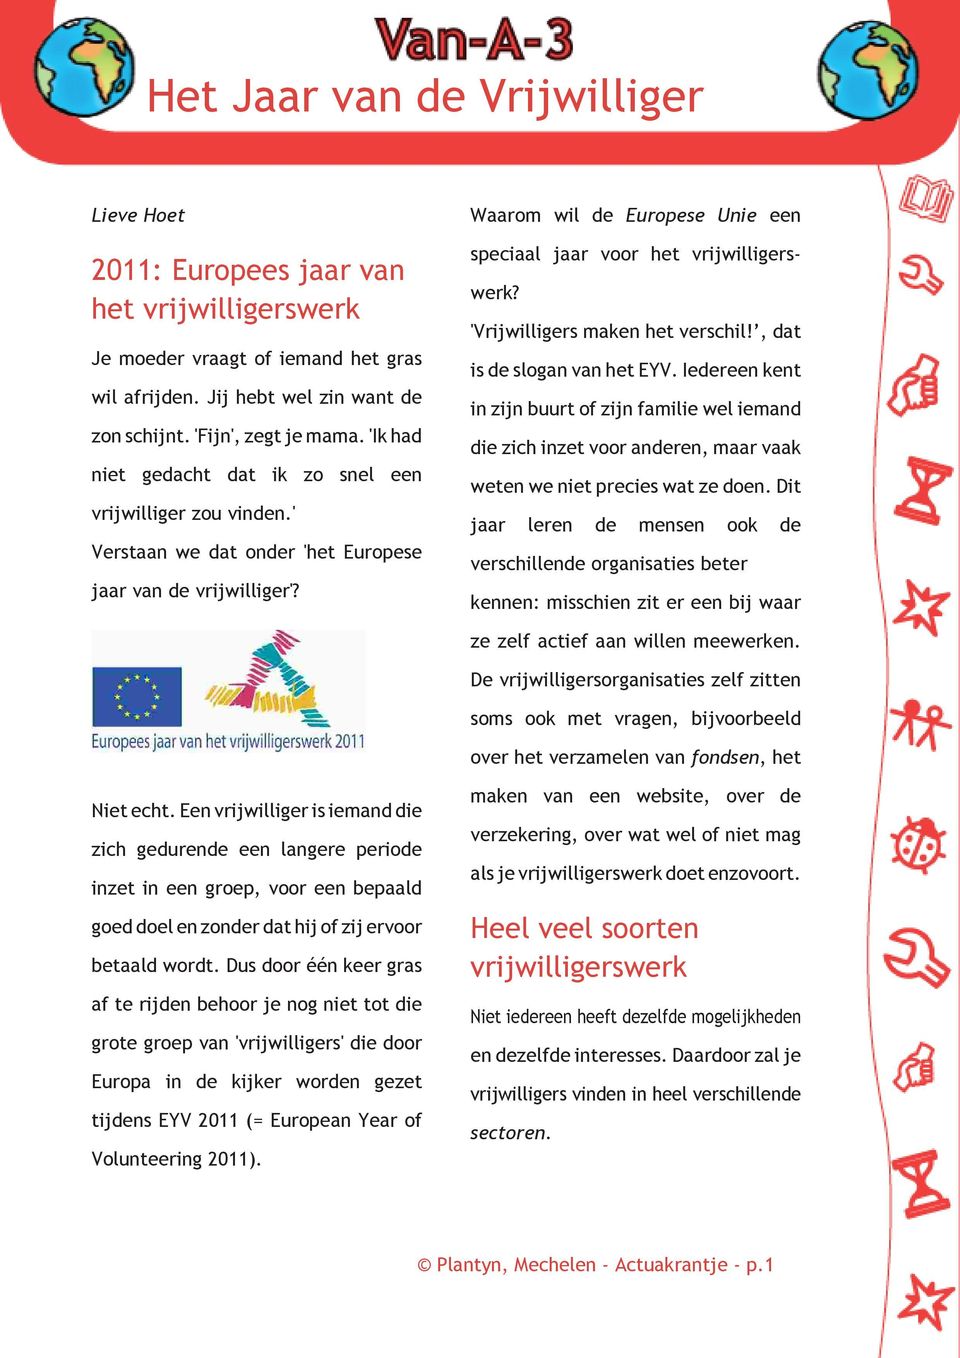 Waarom wil de Europese Unie een speciaal jaar voor het vrijwilligerswerk? 'Vrijwilligers maken het verschil!, dat is de slogan van het EYV.